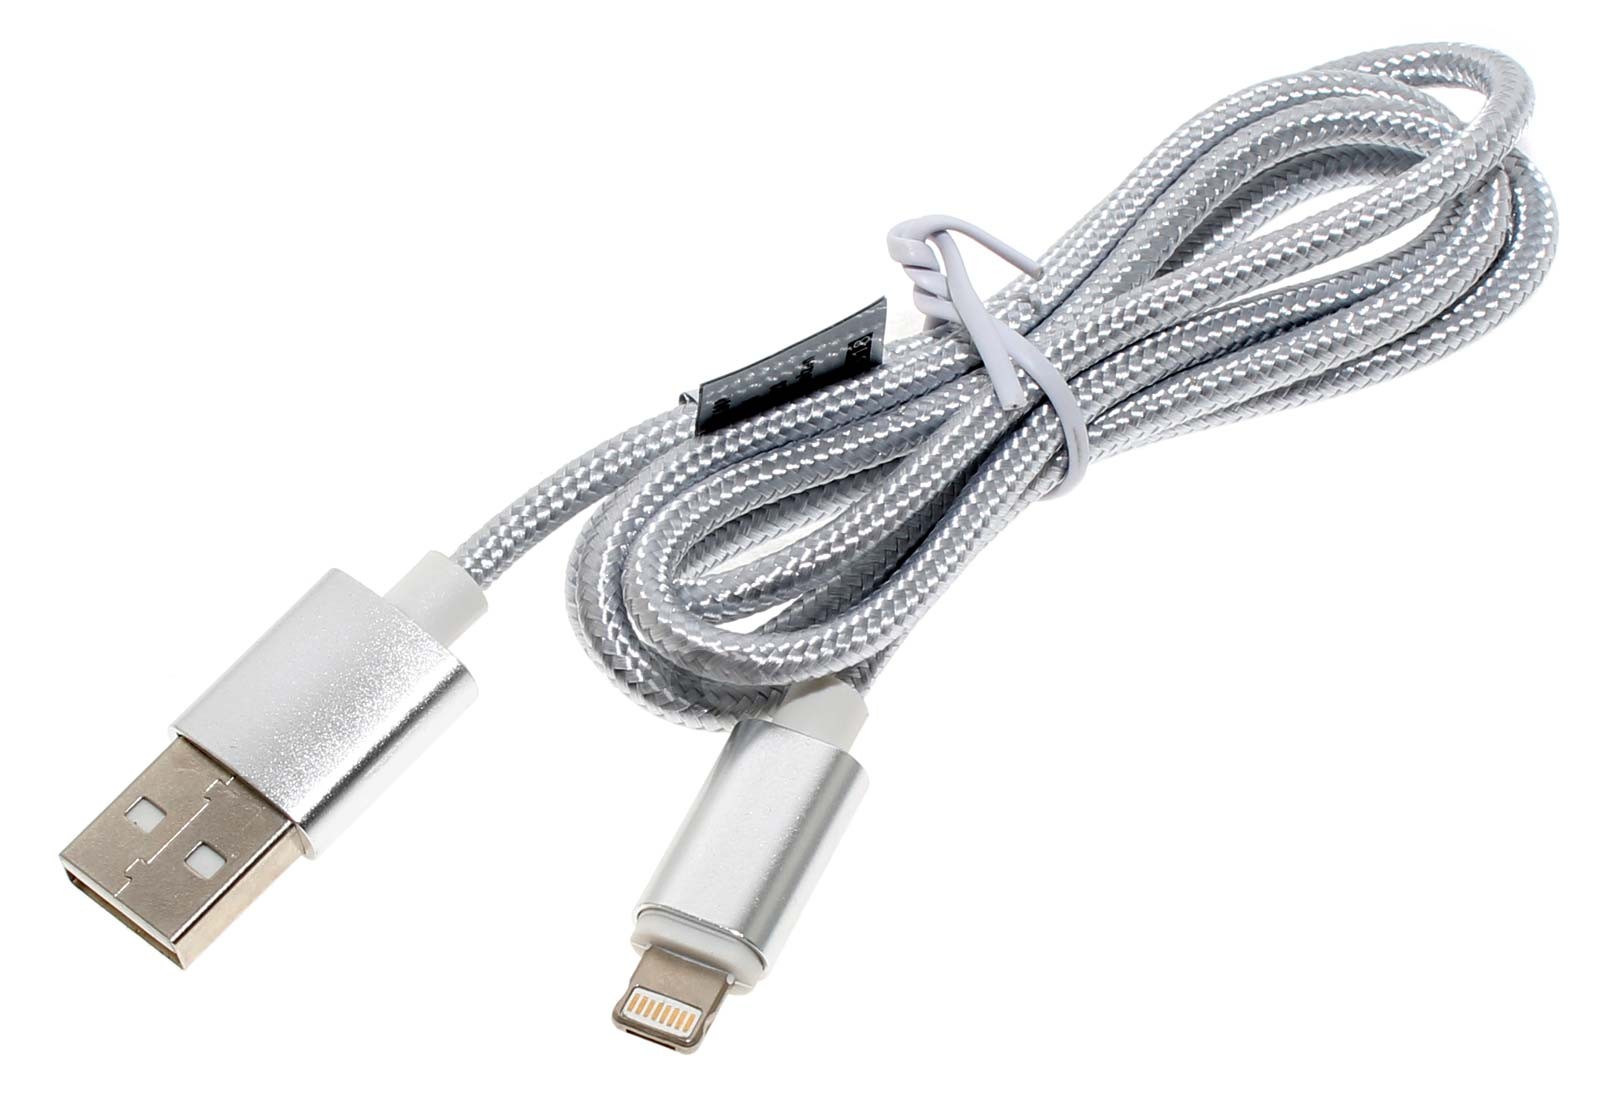 USB-Datenkabel (USB 2.0) zur Datenübertragung zwischen Smartphone, Handy und PC und weiteren kompatiblen Geräten, der innovative 2in1 Kombistecker vereint 2 Steckertypen, den iPhone Stecker und den Micro-USB-Stecker